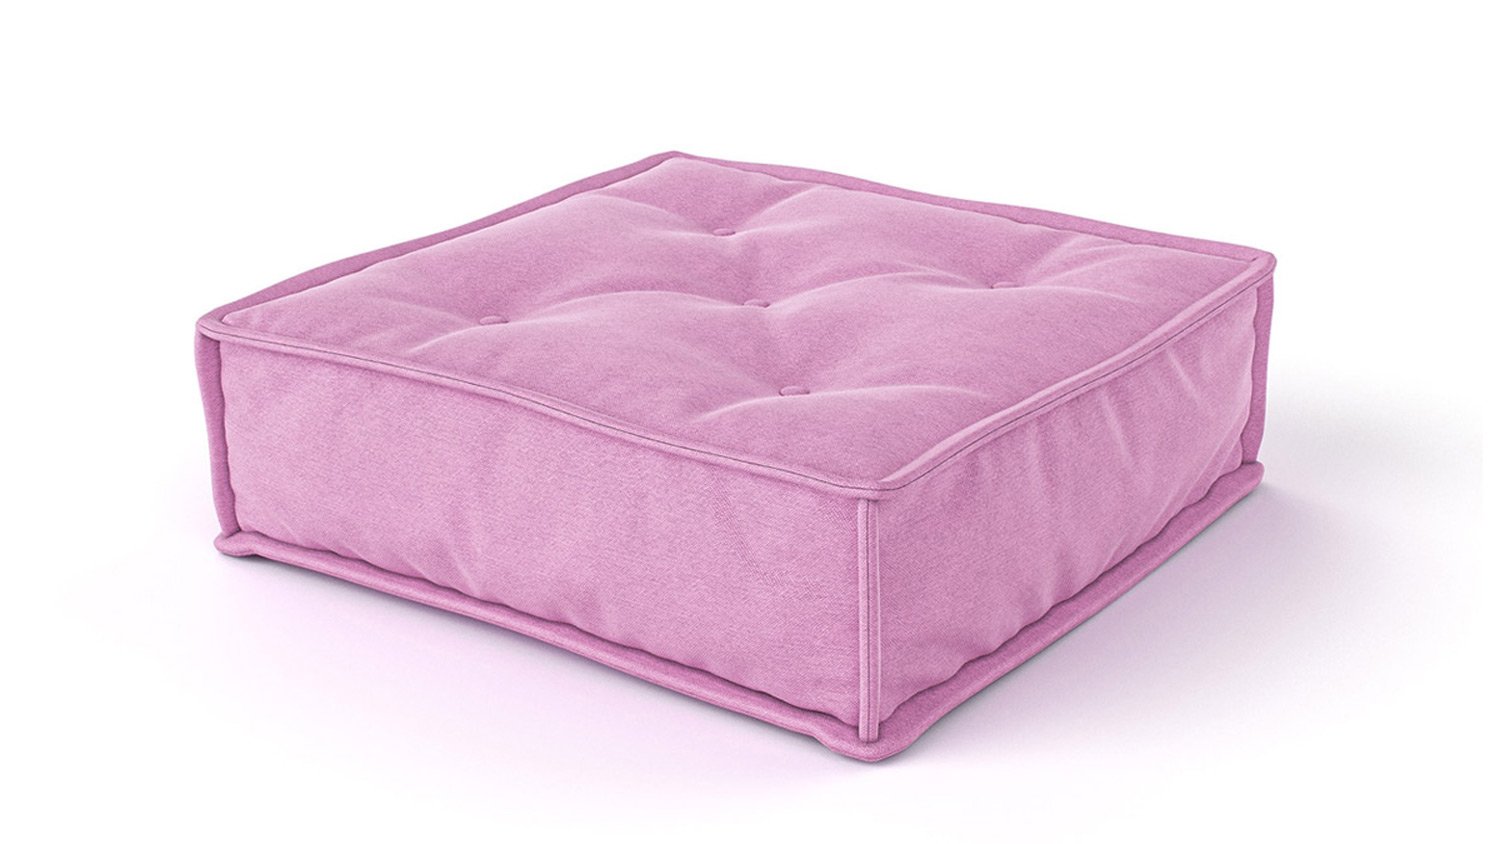 Poduszka dla sofy dziecięcej MyColorCube różowy